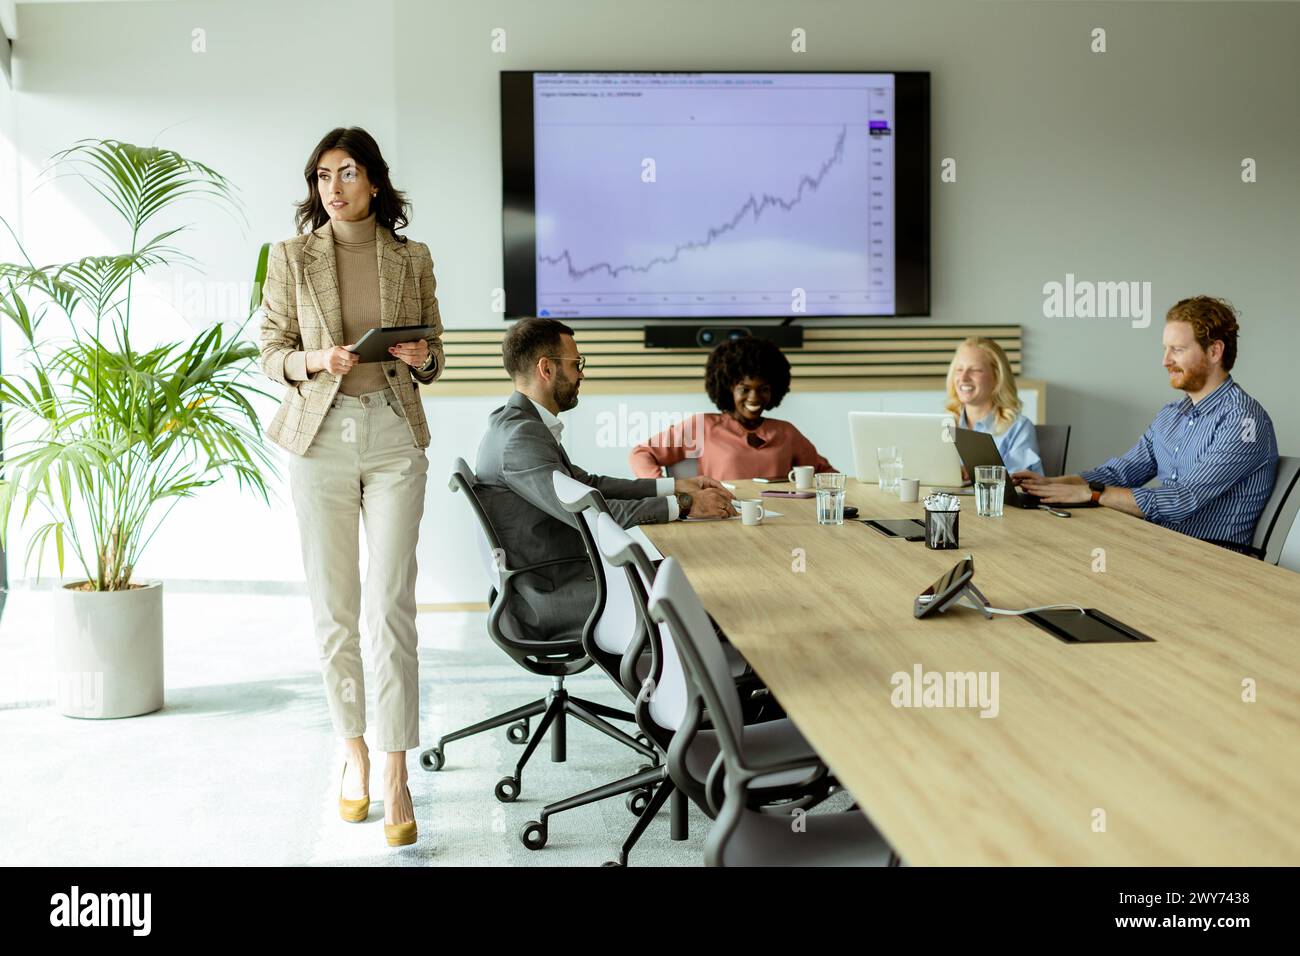 Entschlossene Führungskraft steht mit einem Tablet im Vordergrund und spricht ihr aufmerksames Team während eines Meetings an. Stockfoto